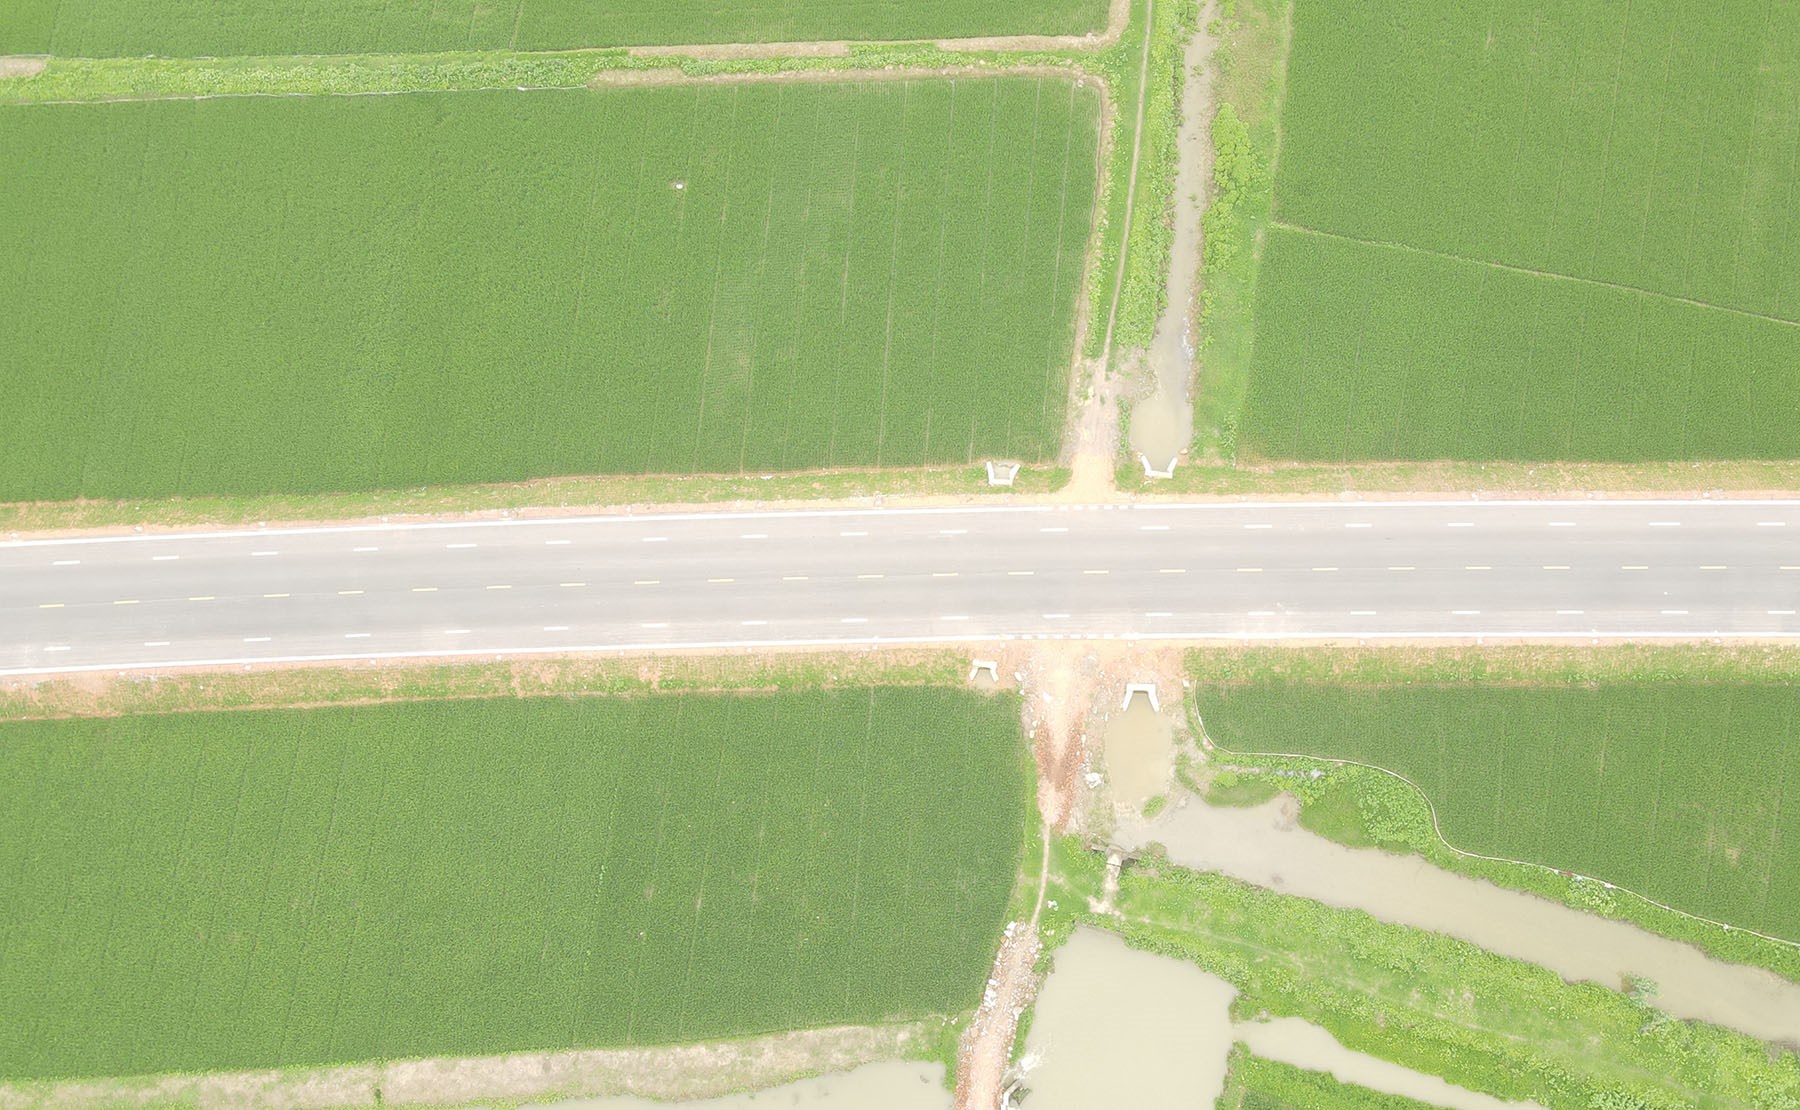 Hình ảnh đường kết nối Hà Nội - Bắc Giang qua cầu Xuân Cẩm vừa thông xe